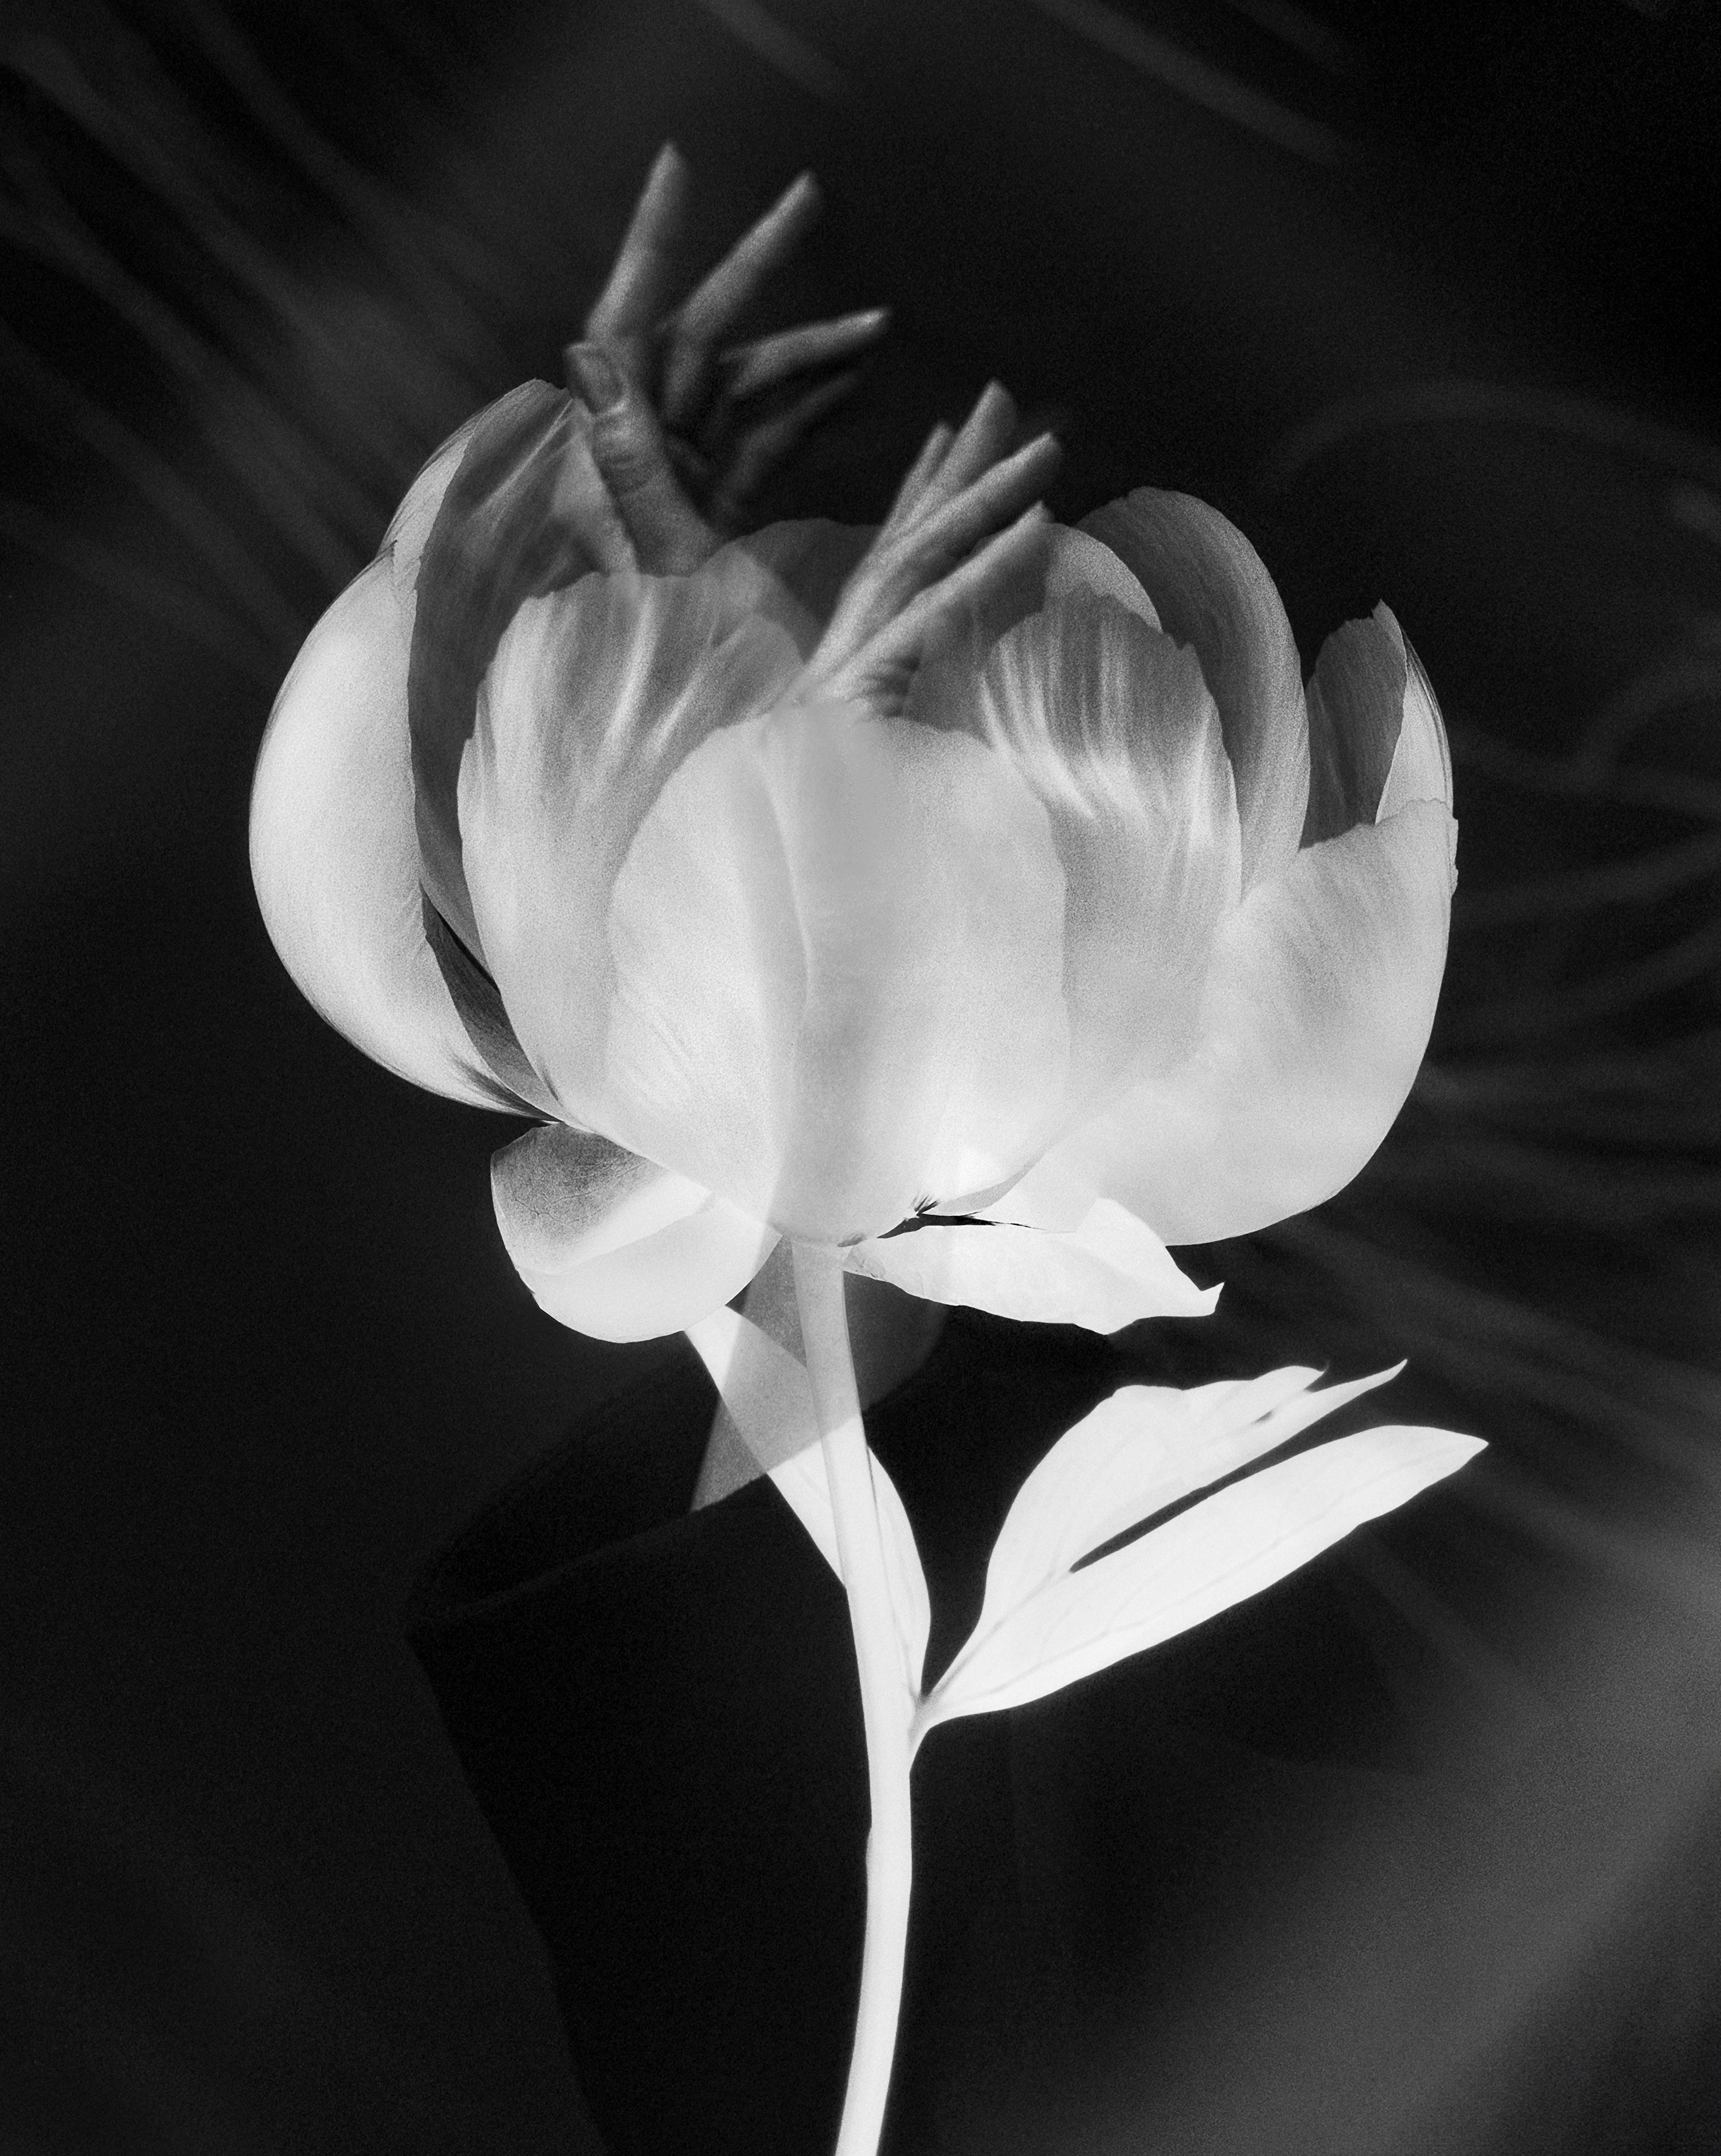 „Blooming hands“ Doppelbelichtungsfotografie der bildenden Kunstfotografie, Auflage von 20 Stück